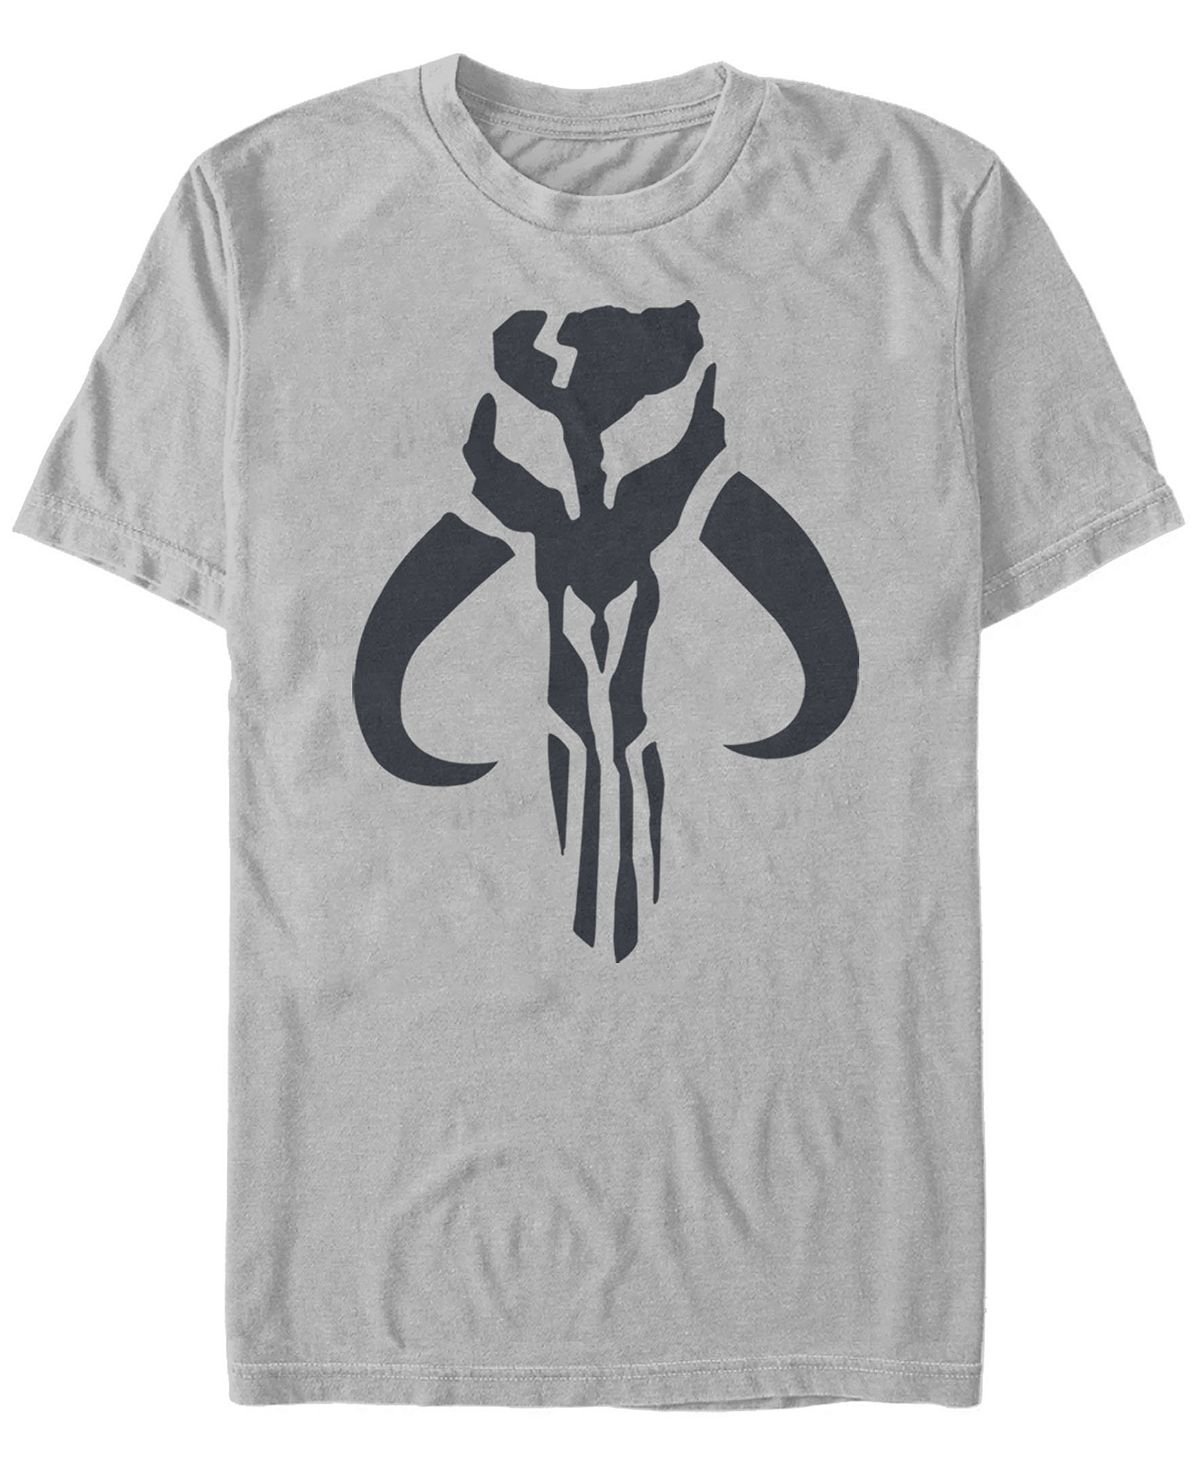 Звездные войны мандалорский мифозавр череп логотип с коротким рукавом мужская футболка Fifth Sun, серебряный фото